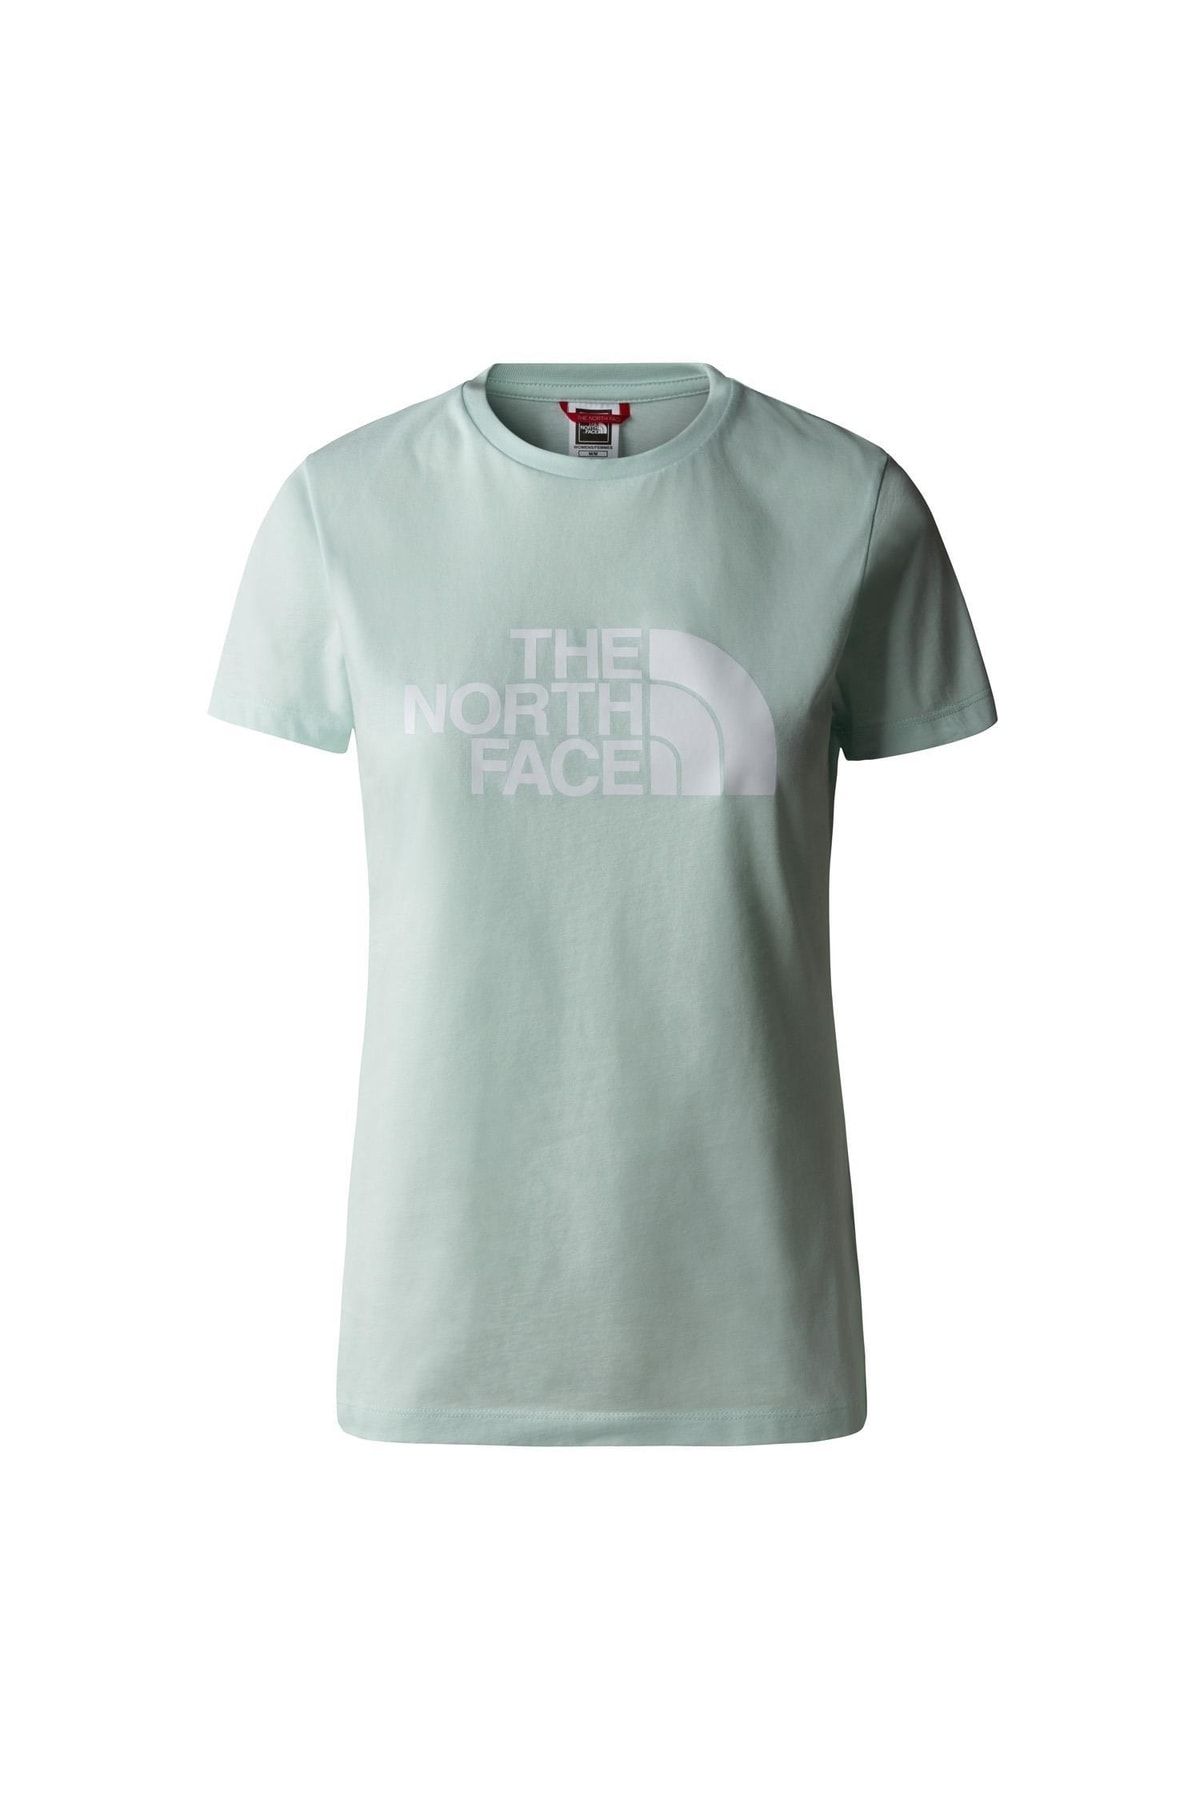 The North Face W S/s Easy Tee Kadın T-shirt Nf0a4t1qlv51